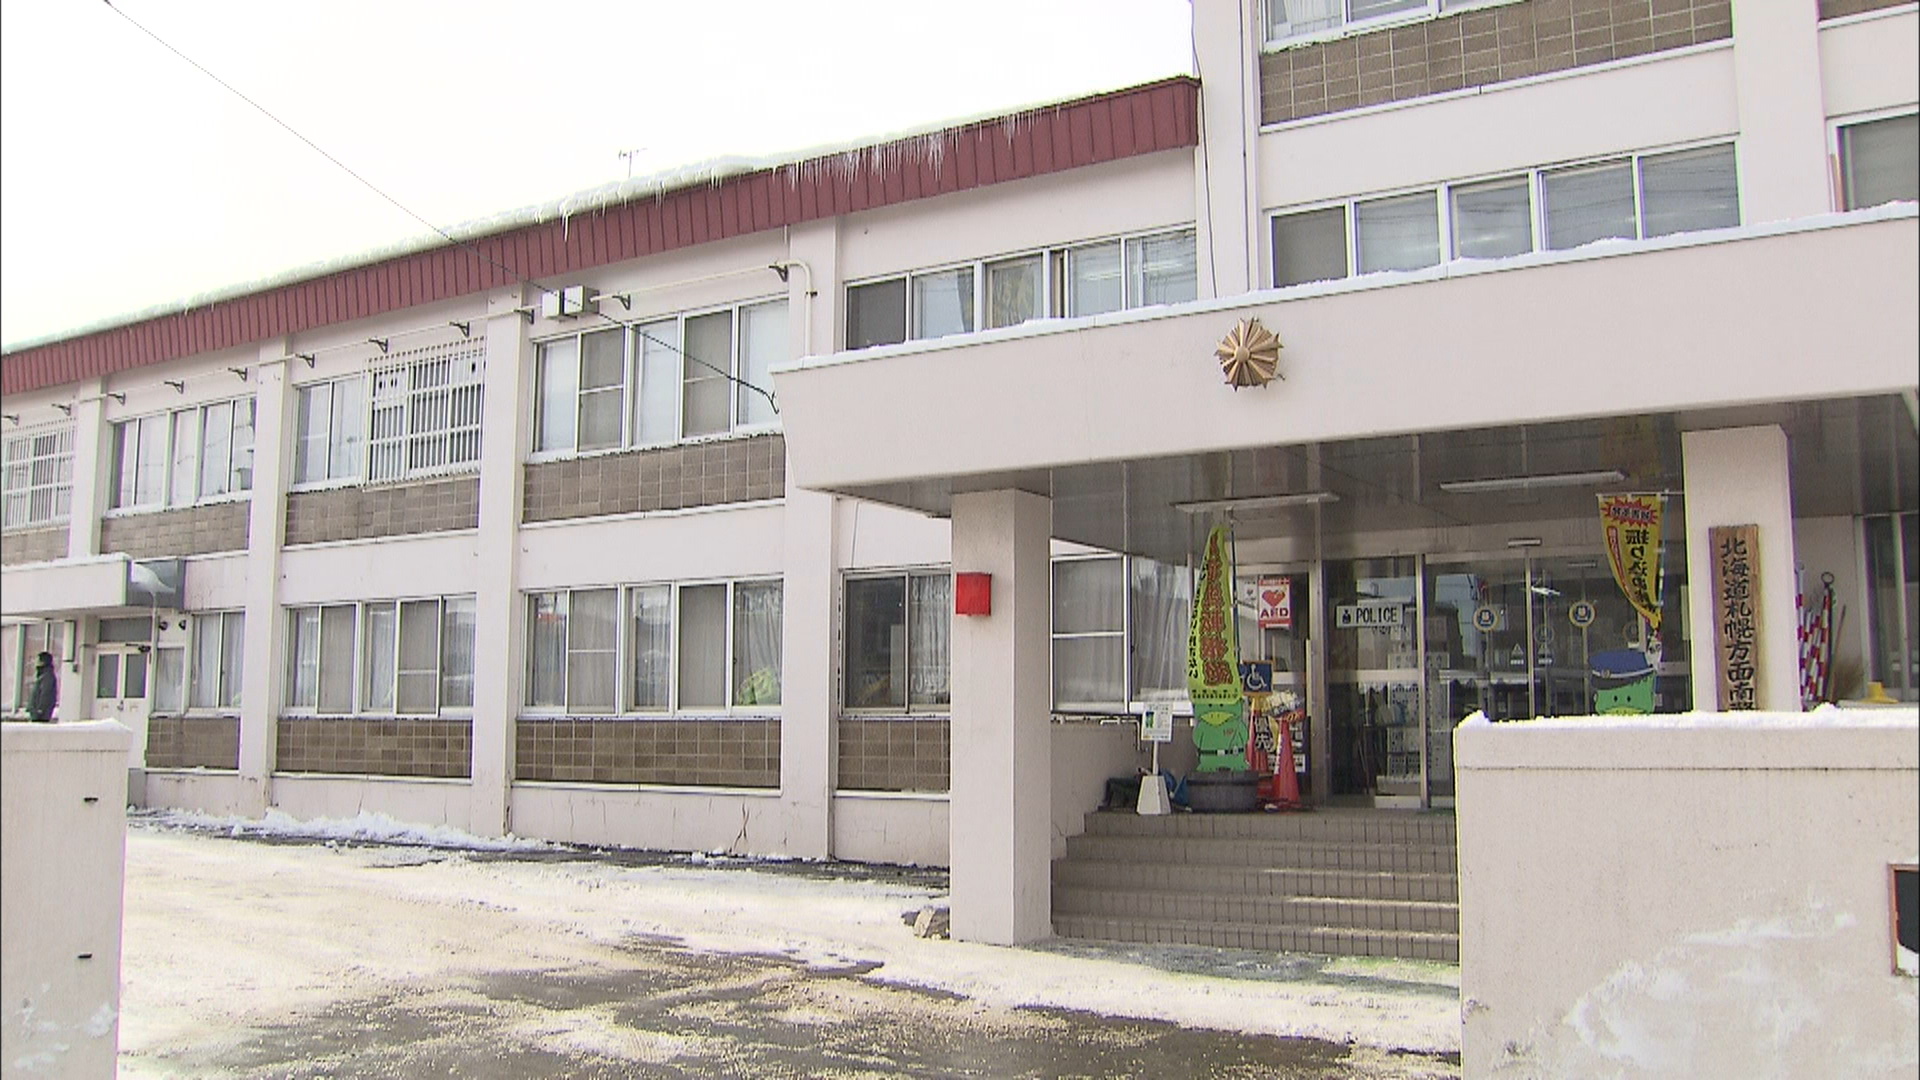 住居侵入の疑いで無職の男を逮捕した北海道警南署